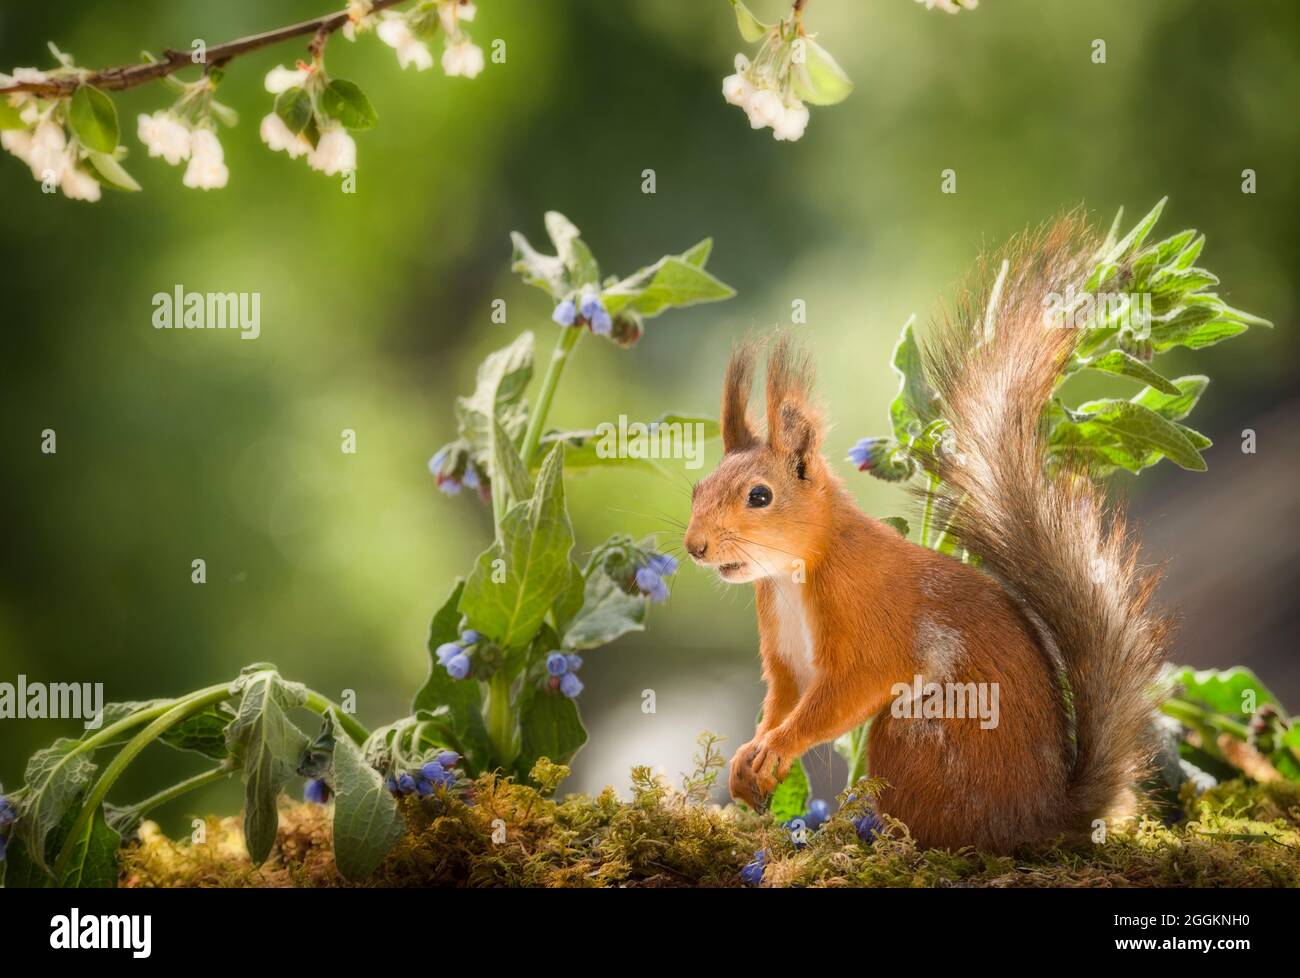 red squirrel is standing between blue comfrey Stock Photo